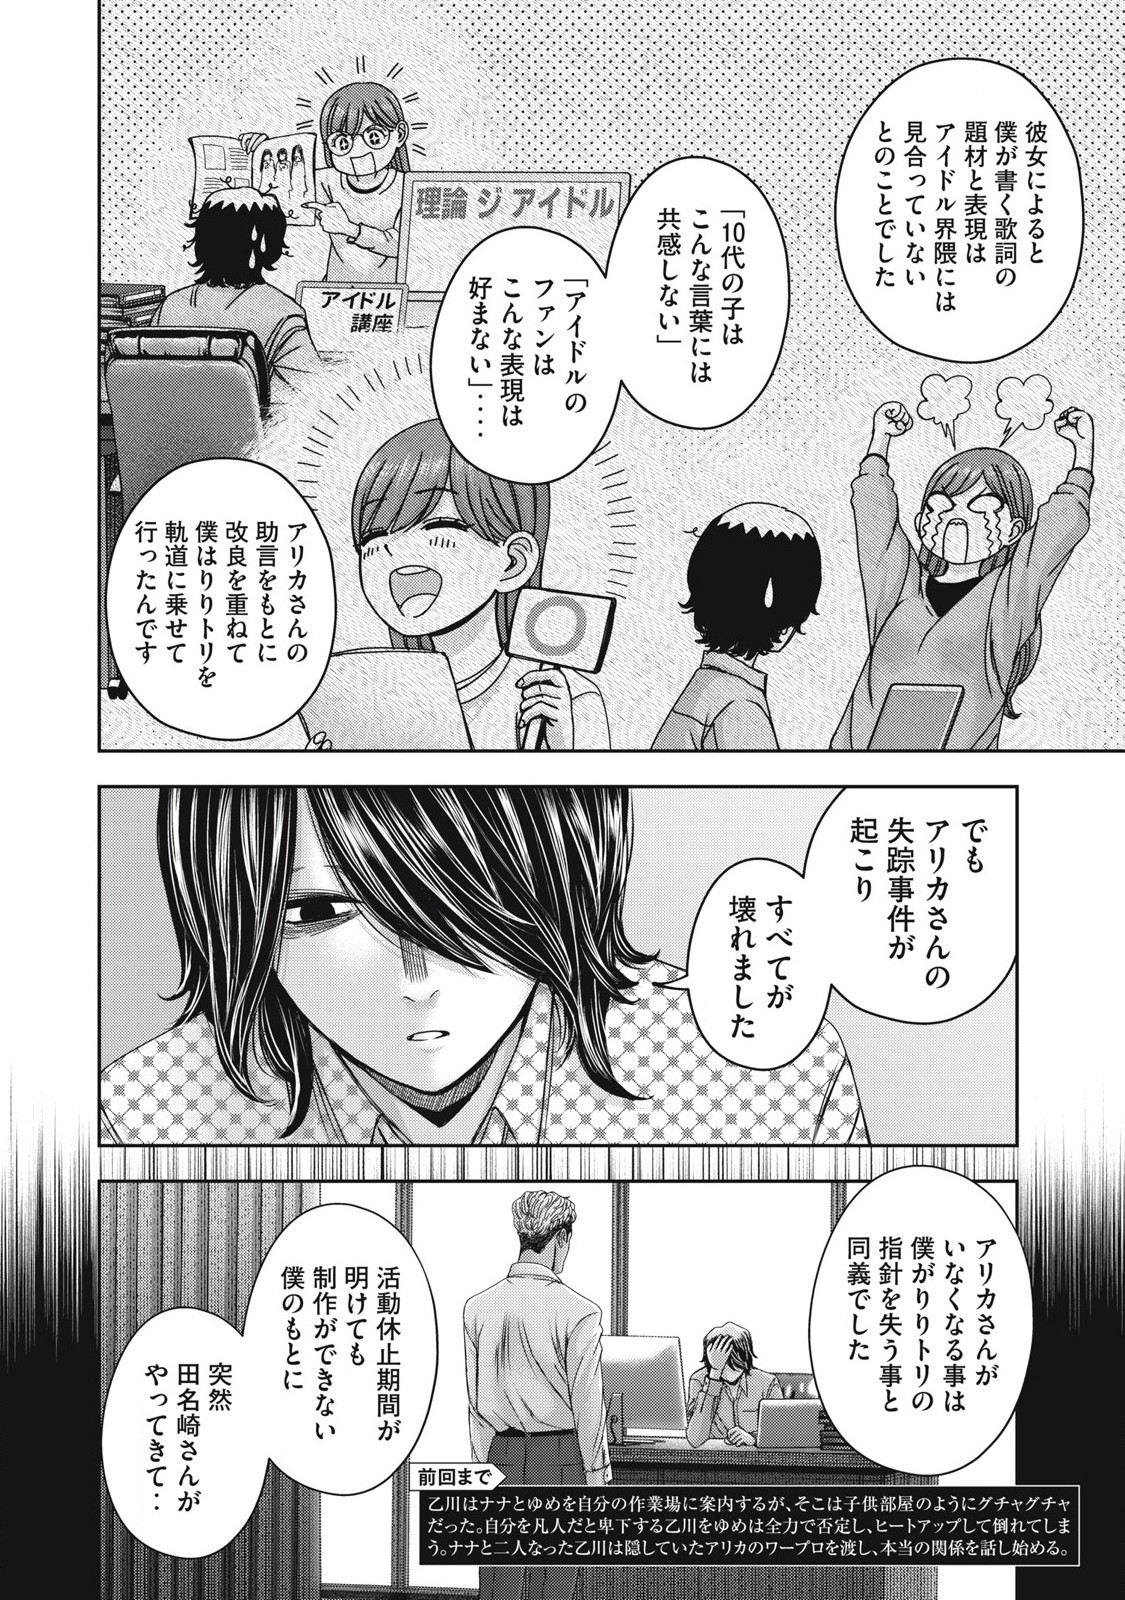 Watashi no Arika - Chapter 53 - Page 2